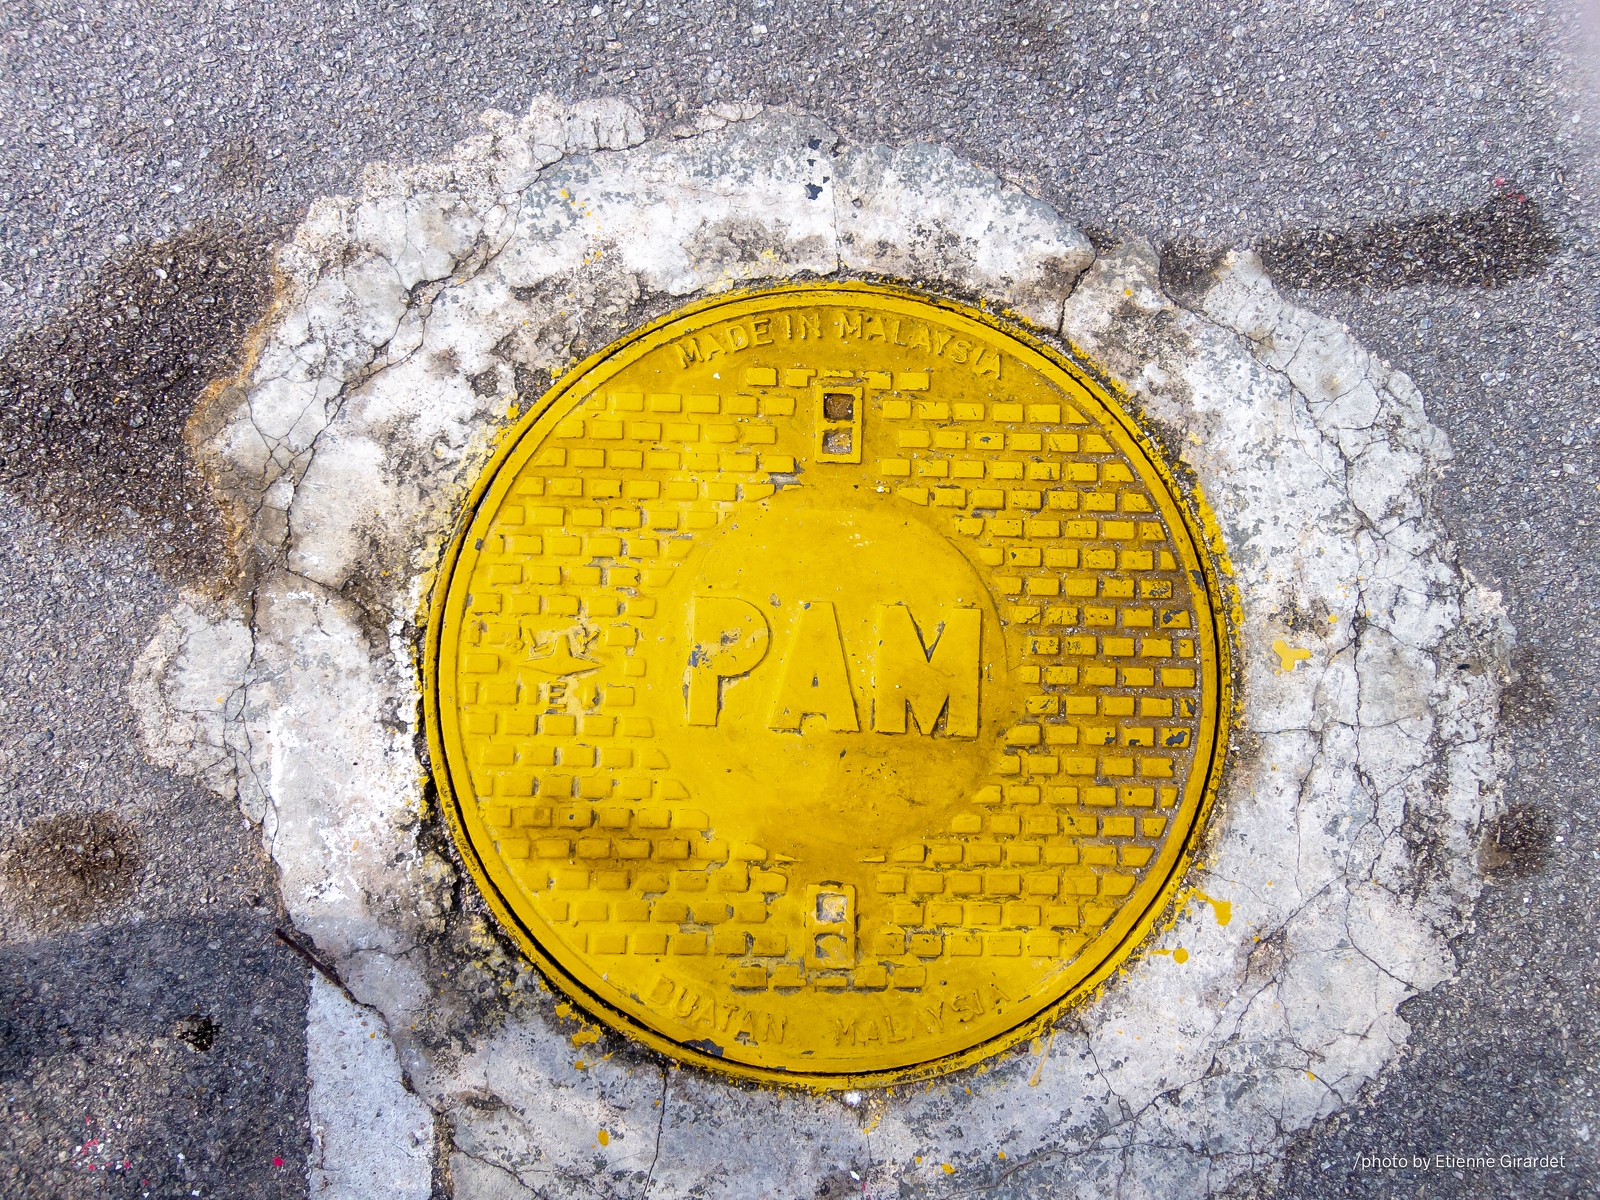 201312_17_IMG_7321-manhole-cover--by-E-Girardet.jpg